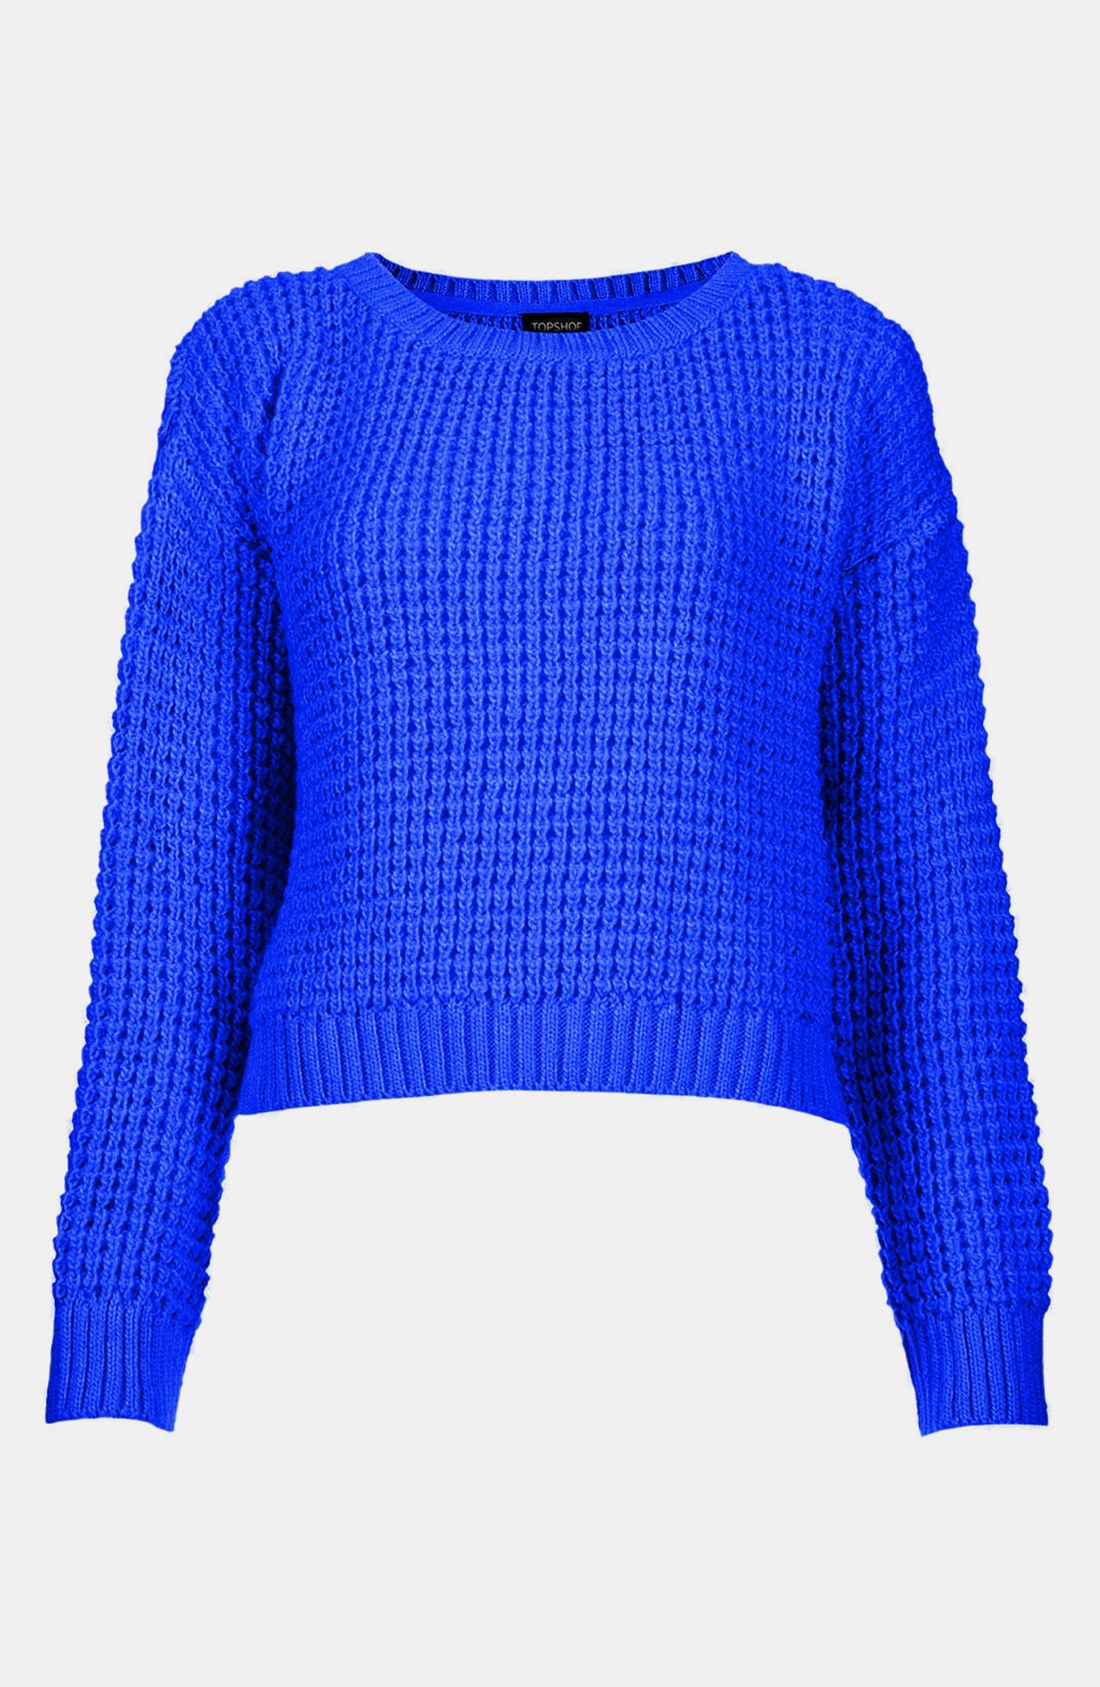 Синие и голубые свитера